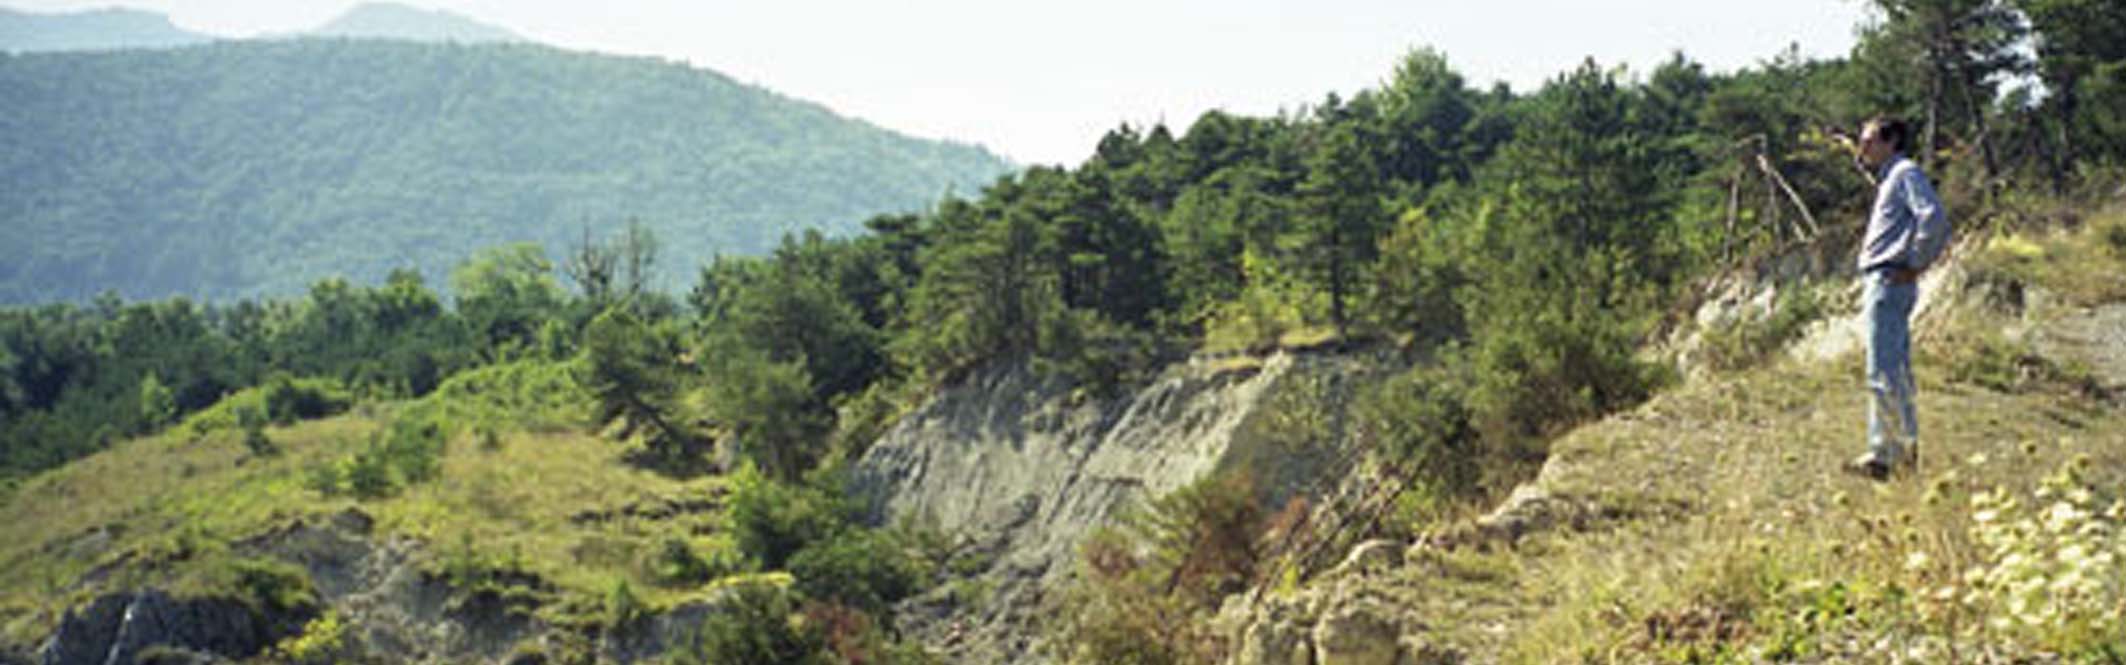 Avignonet/Harmalière landslides: main scarp in 2001 afer a  major reactivation